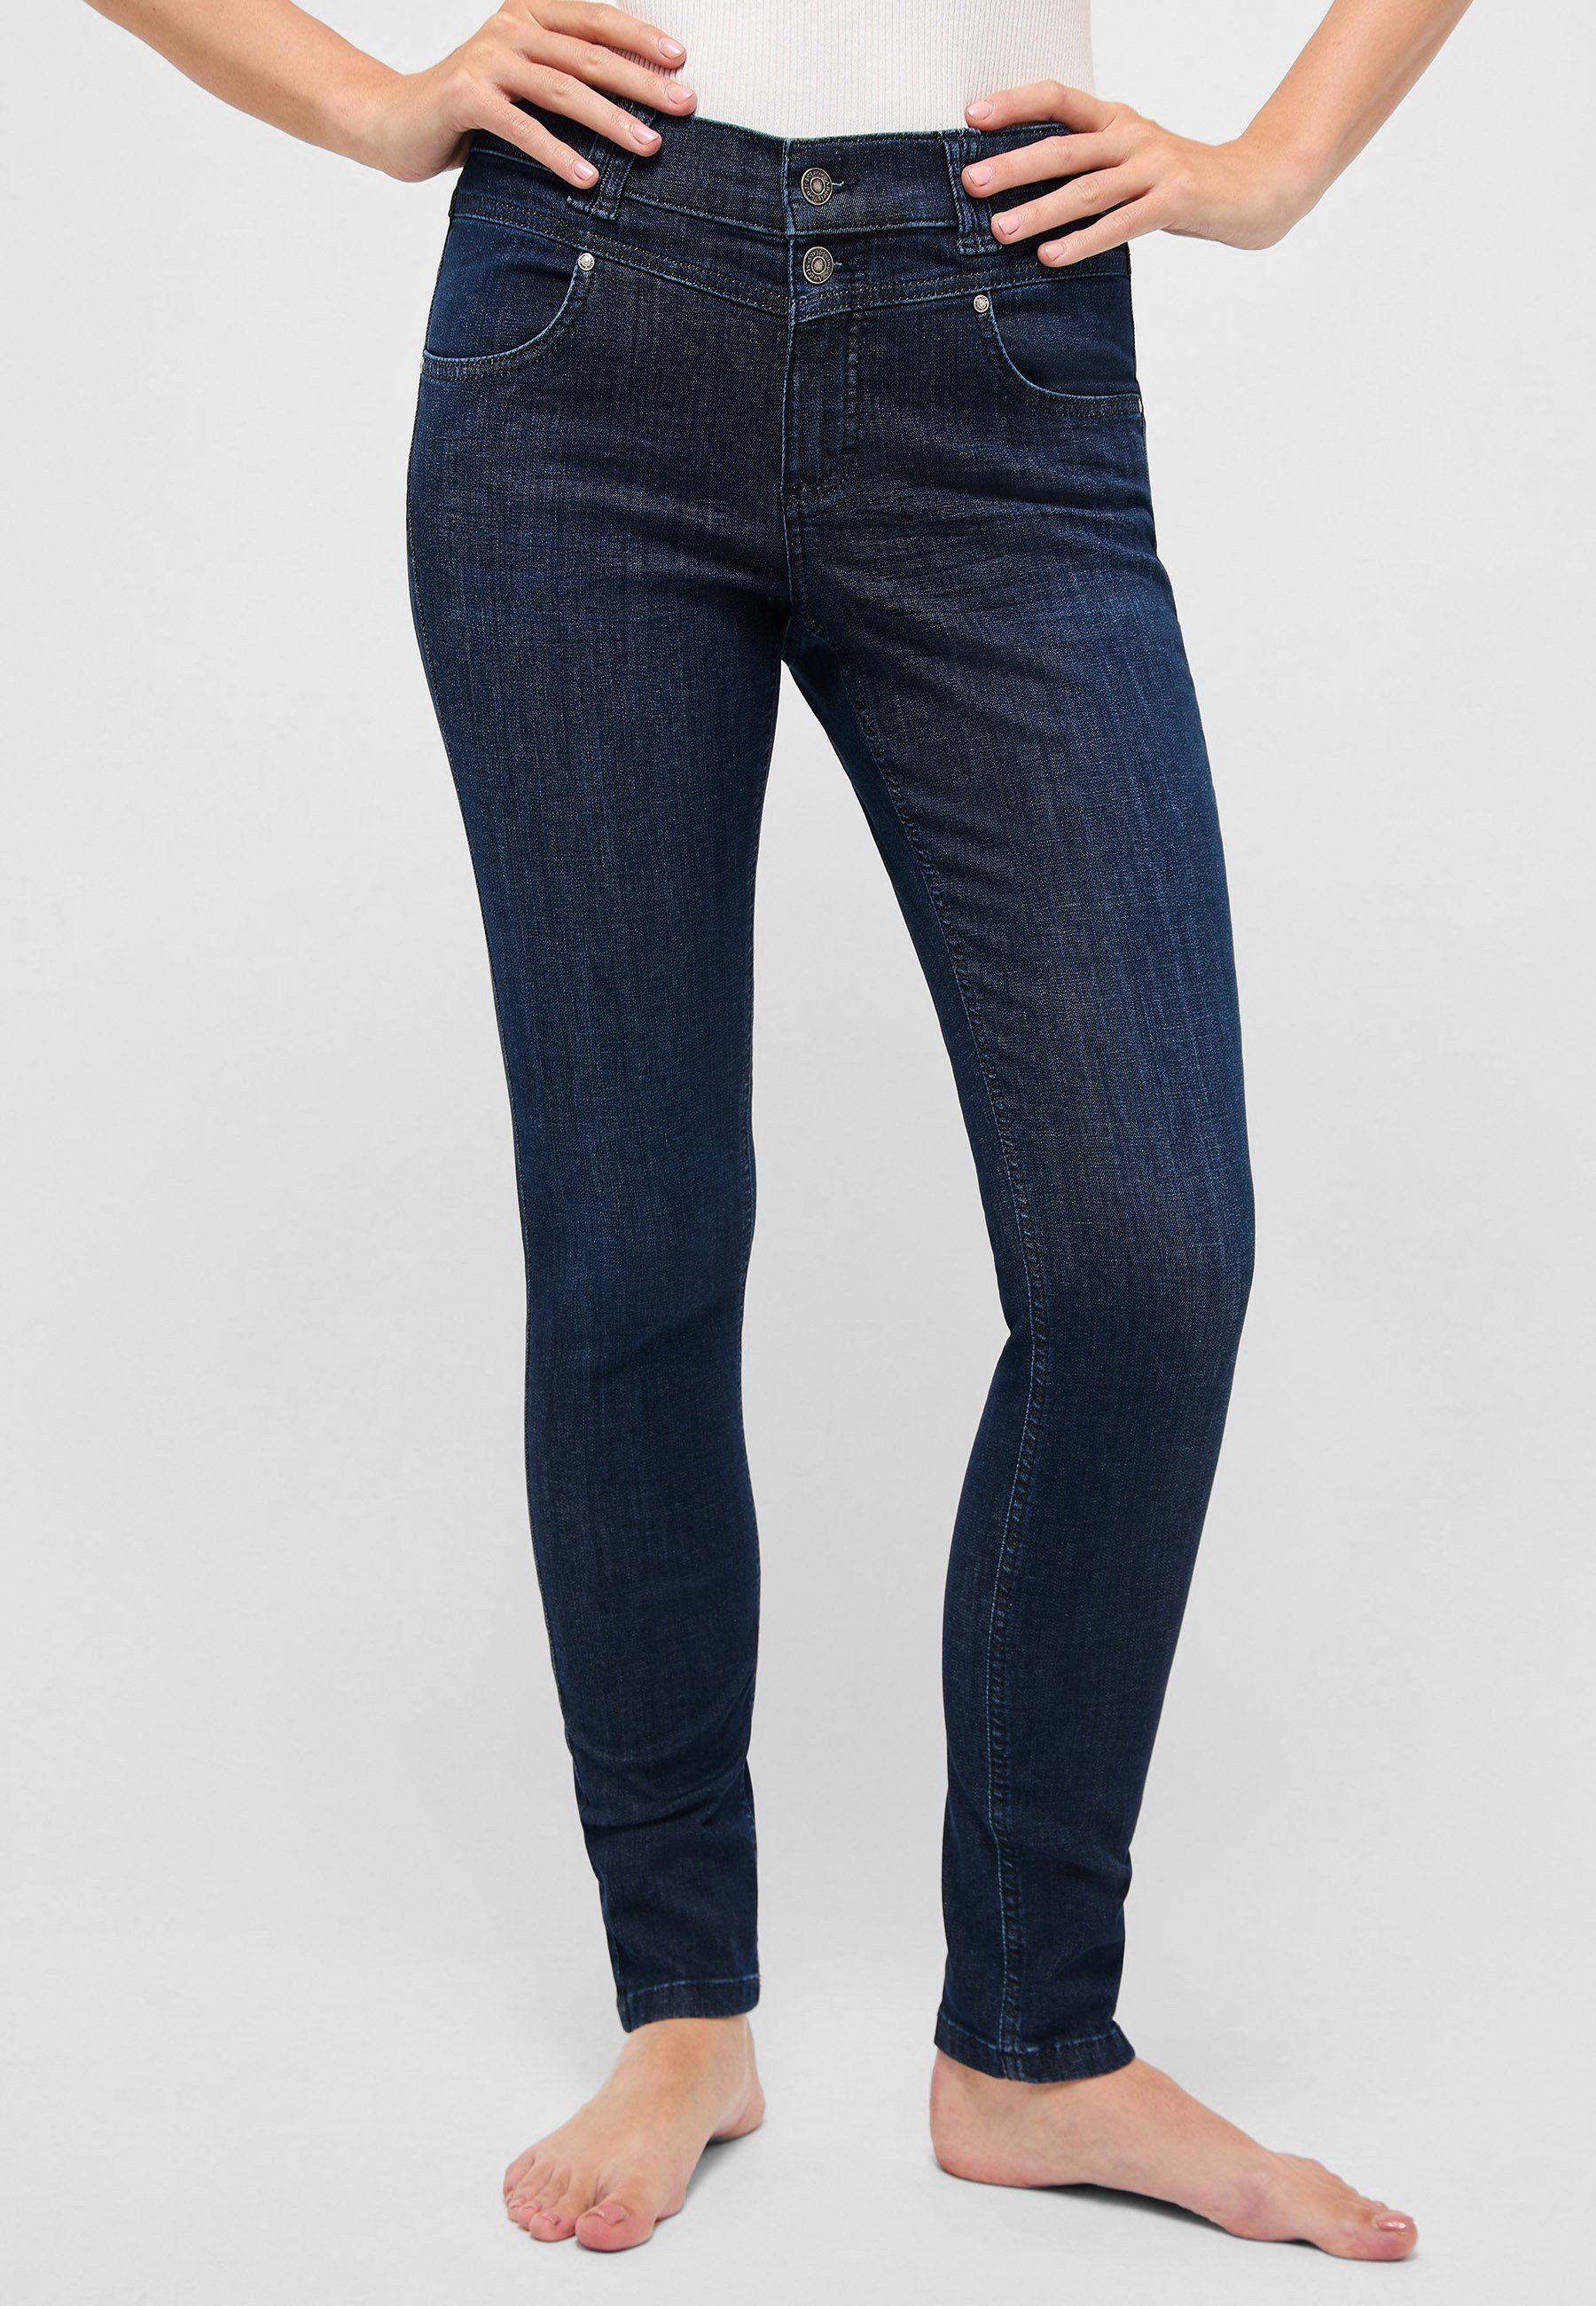 authentischem Skinny Jeans Button mit Slim-fit-Jeans indigo Denim ANGELS